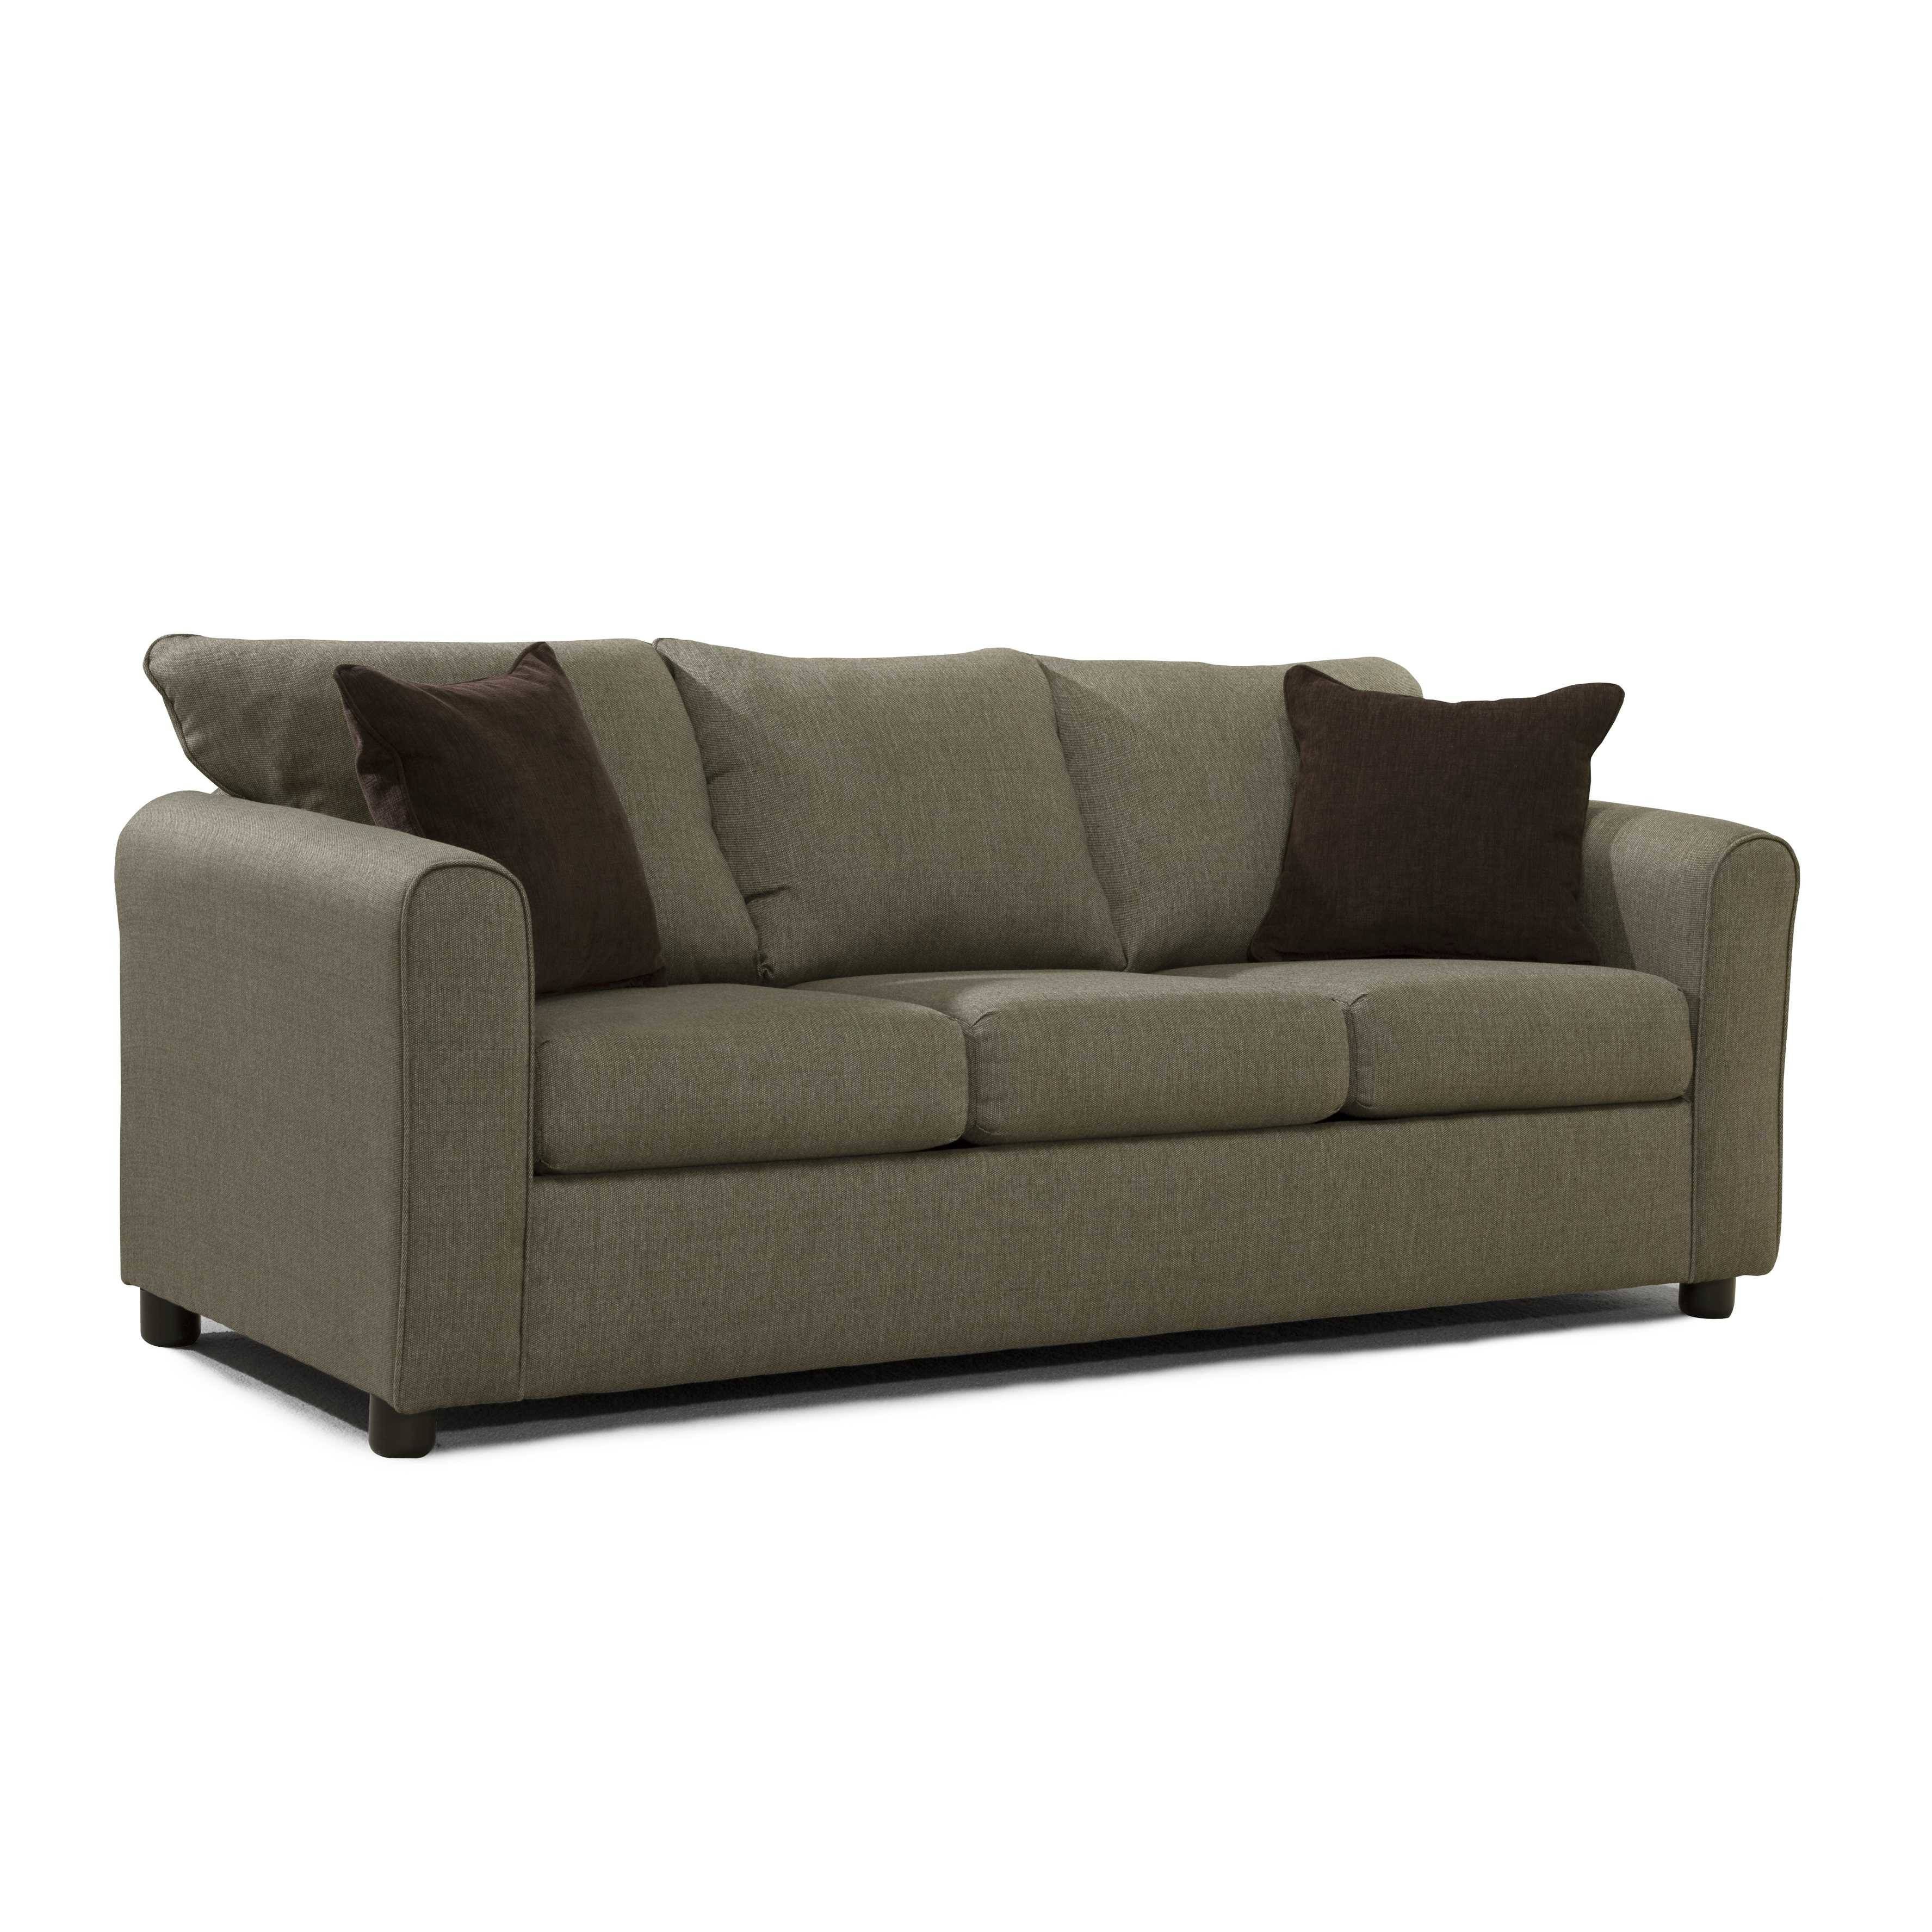 Furniture: Ava Velvet Tufted Sleeper Sofa | Tufted Sleeper Sofa With Regard To Ava Velvet Tufted Sleeper Sofas (View 5 of 15)